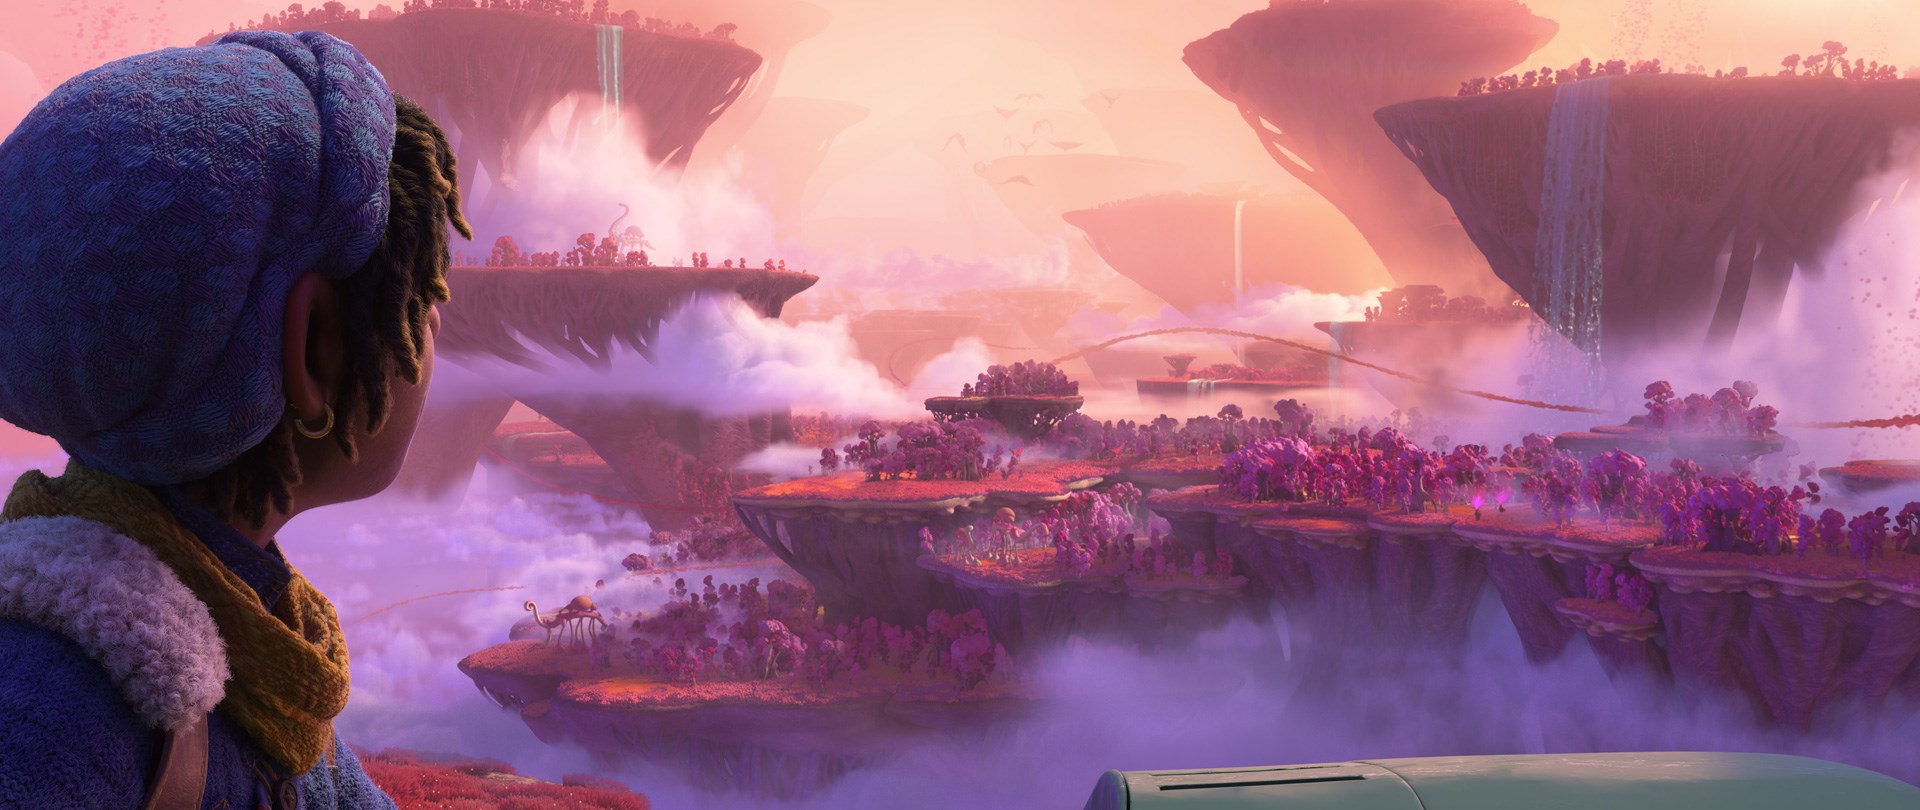 Scen frn filmen En annorlunda vrld med Ethan Clade i frgrunden och ett nrmast utomjordiskt landskap i rosa med svamp- och korallliknande vxtlighet i bakgrunden som panorama.